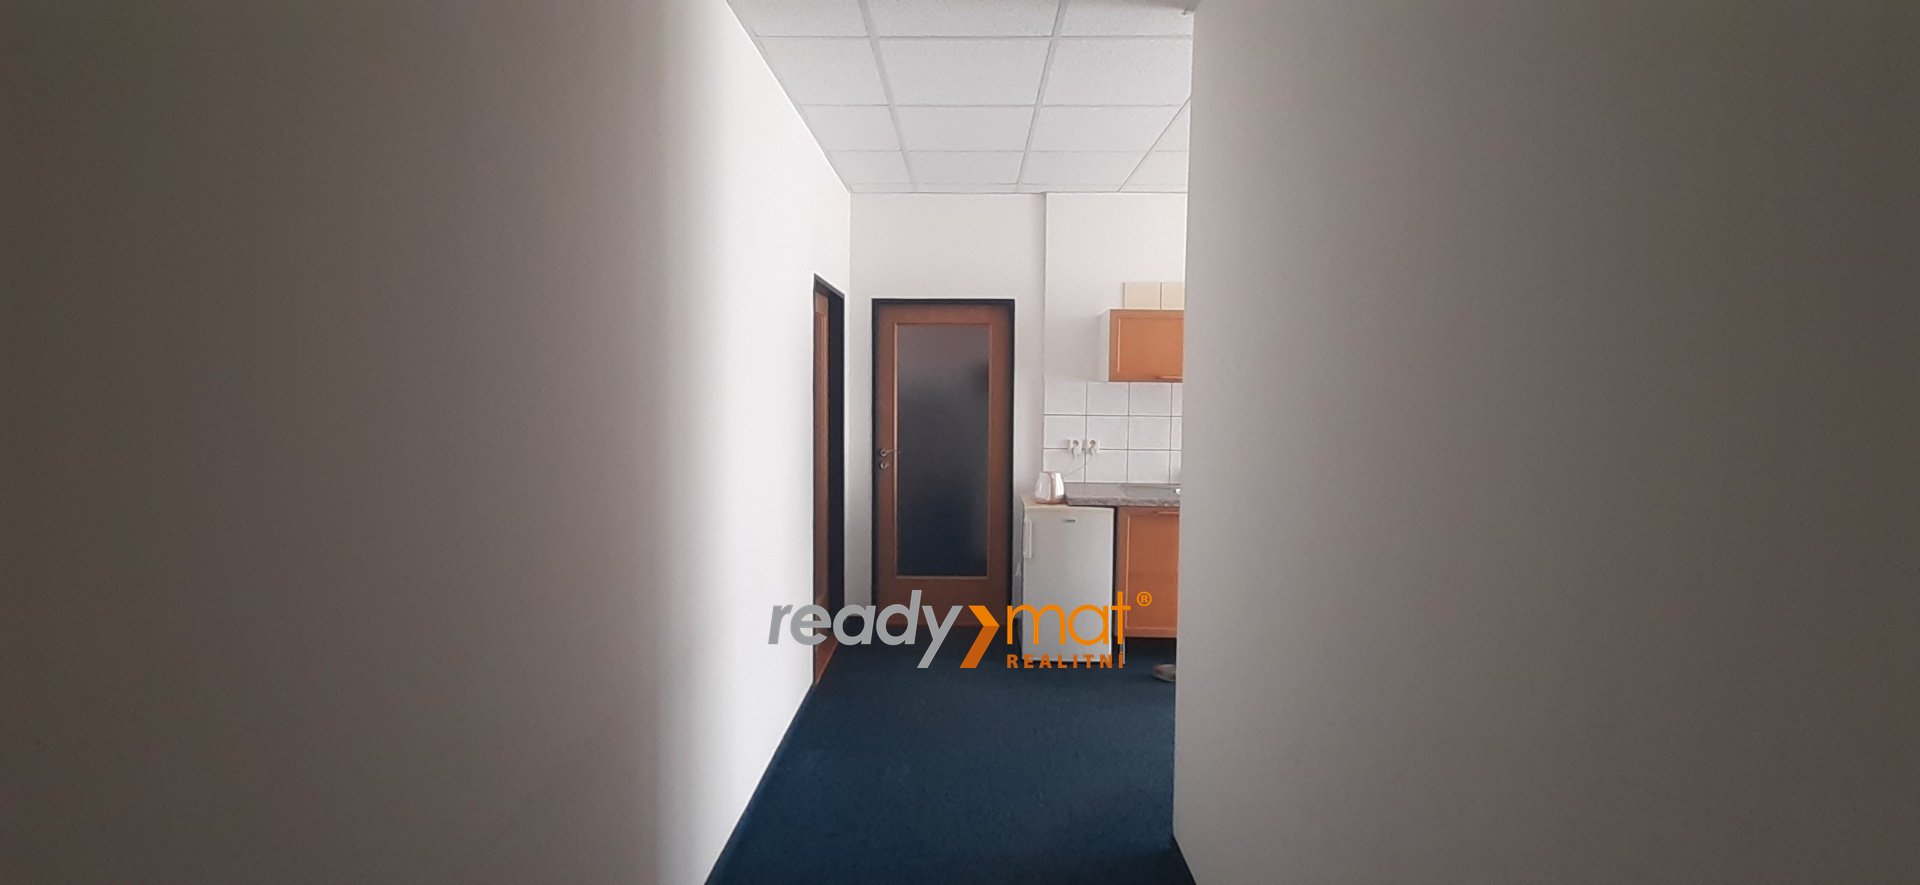 Pronájem, Kanceláře, 28 m² – Hodonín - ready-mat realitní